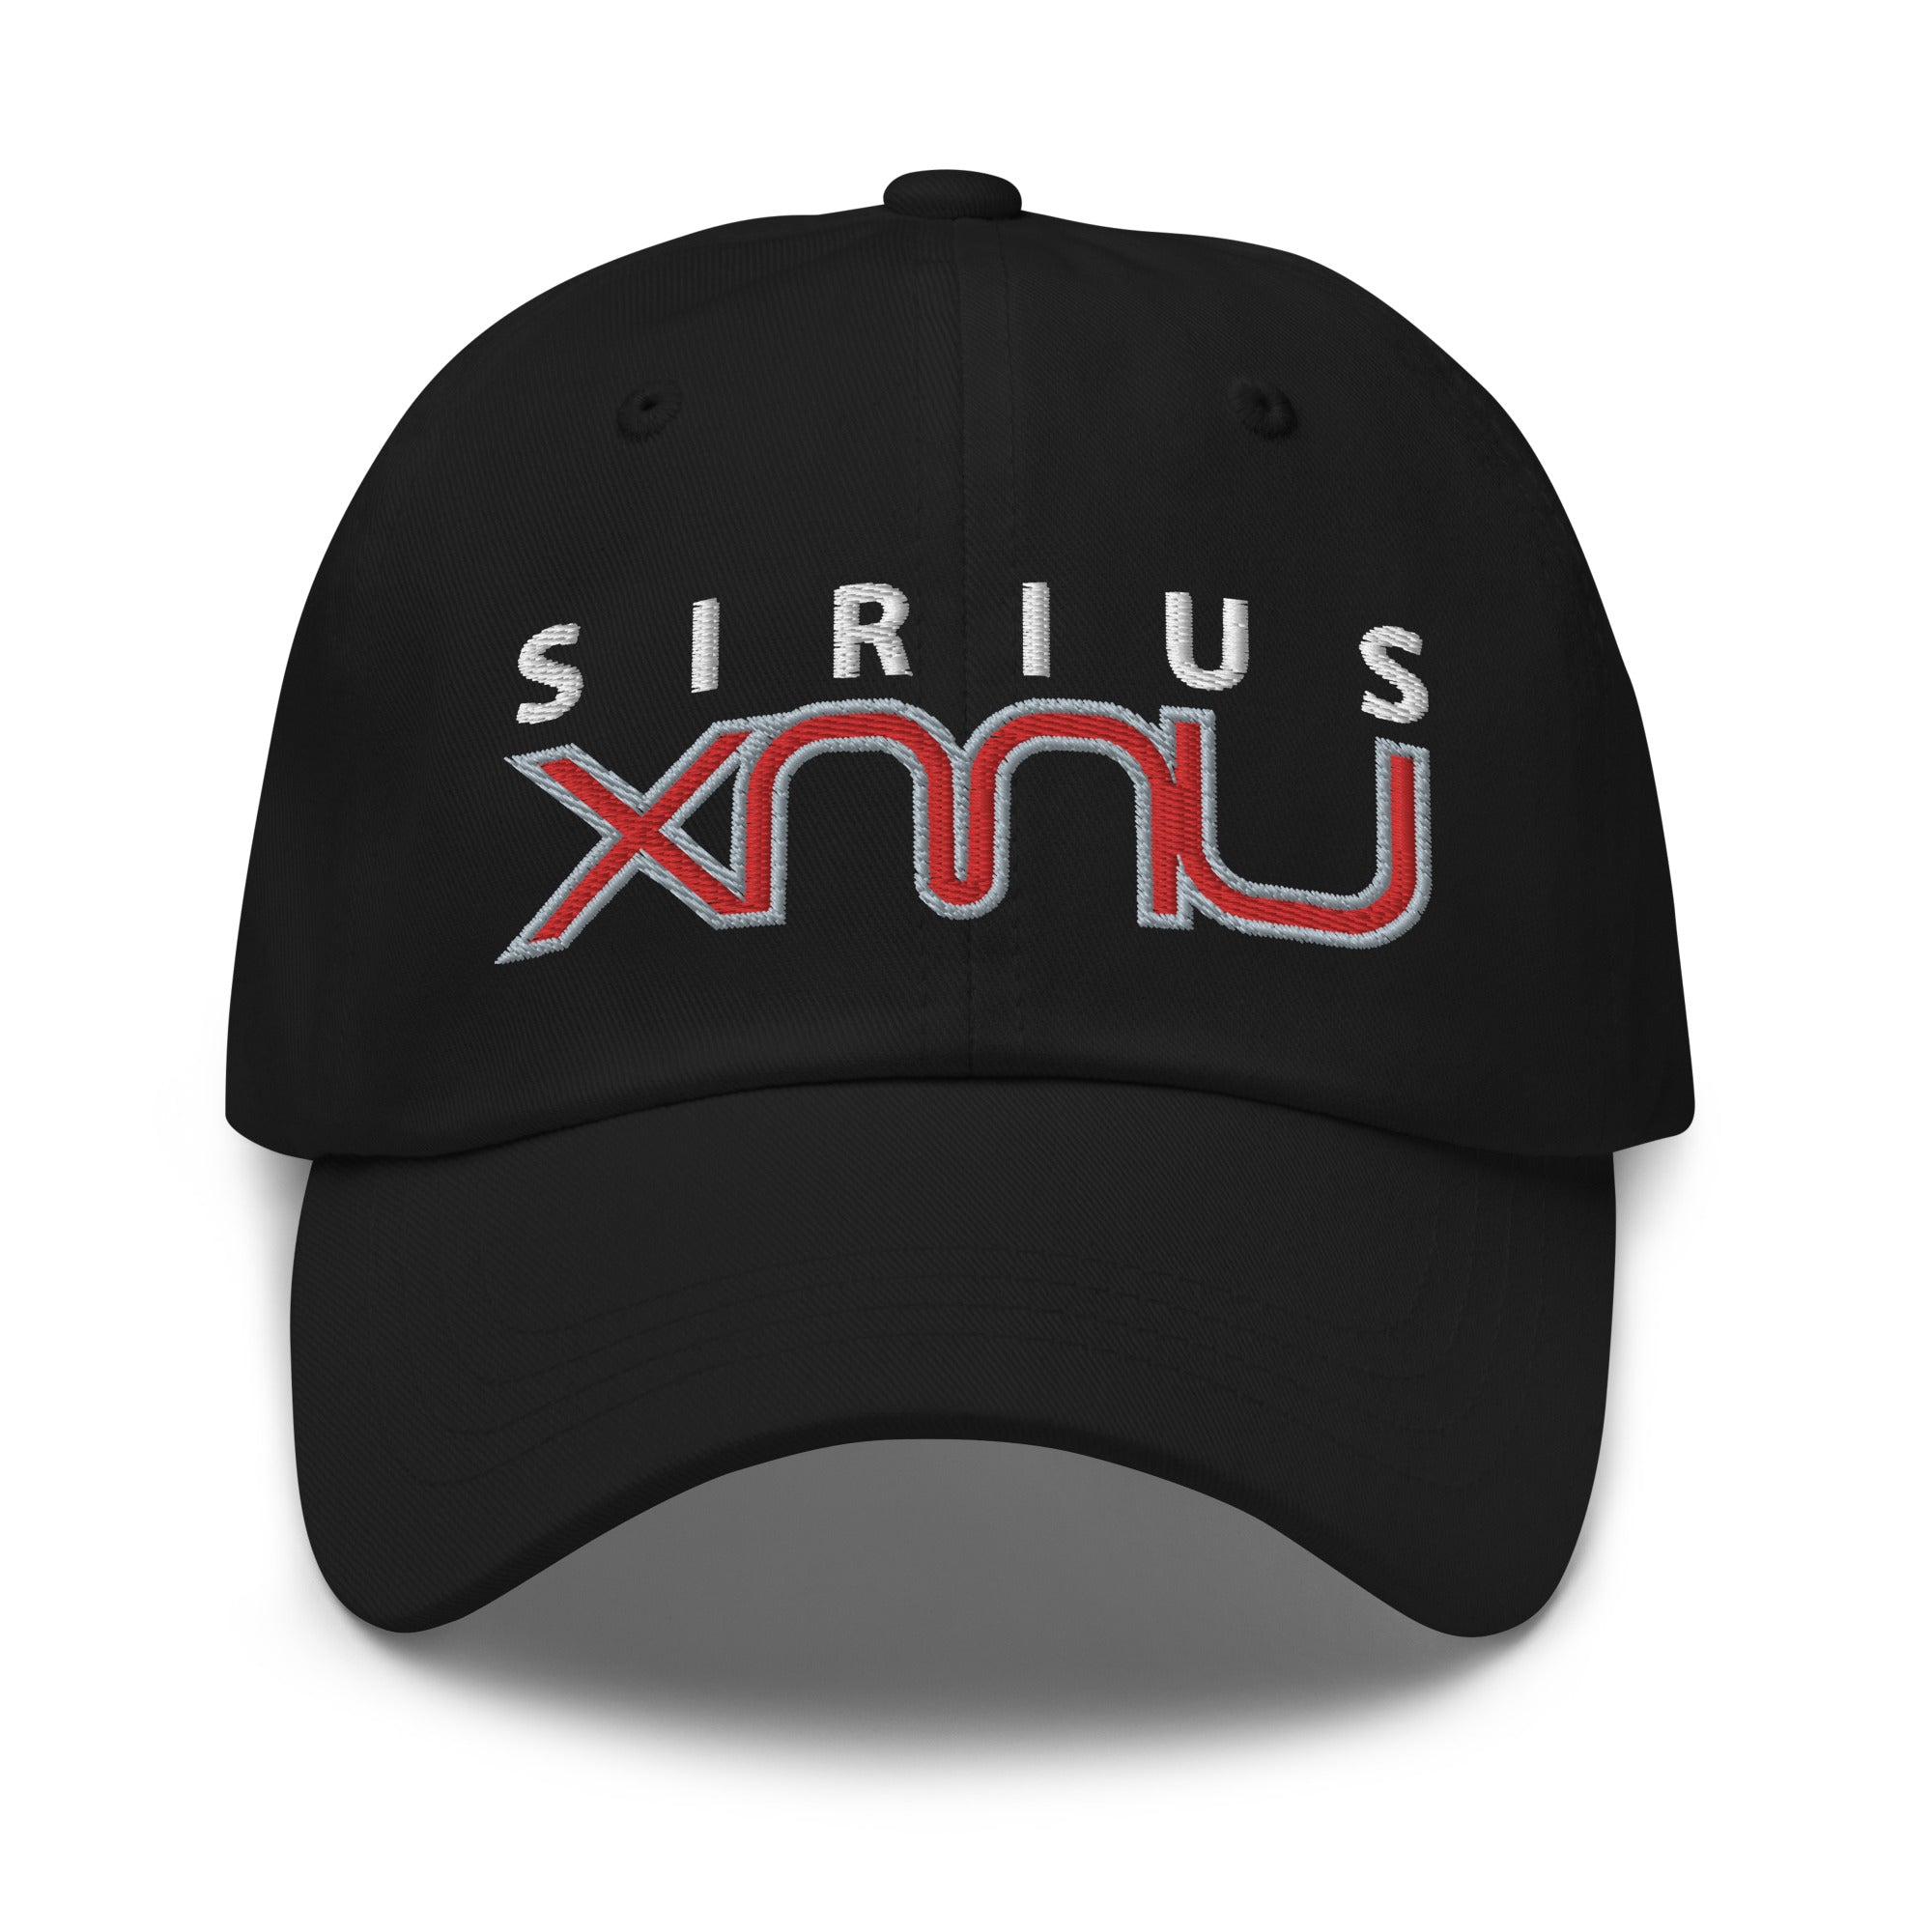 SiriusXMU: Dad Hat